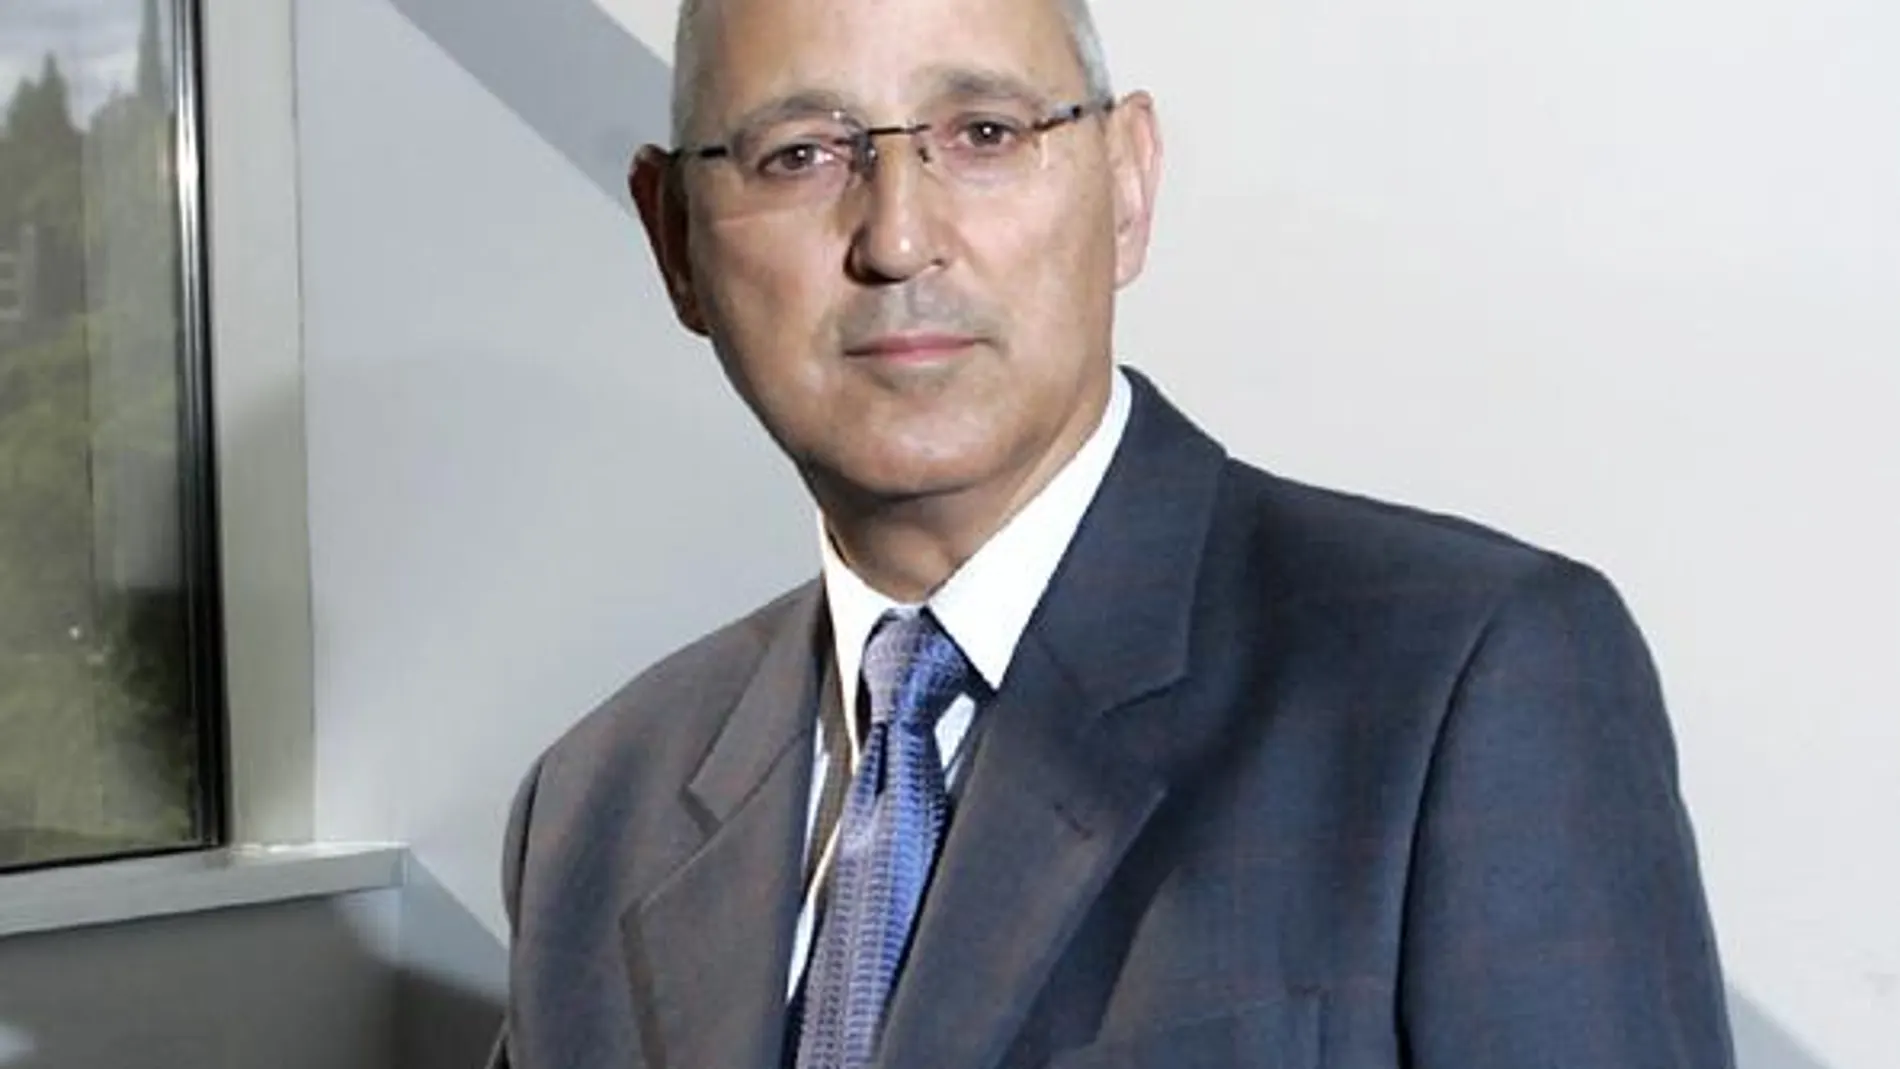 José Antonio Álvarez Gundín, nuevo director de los servicios informativos de TVE